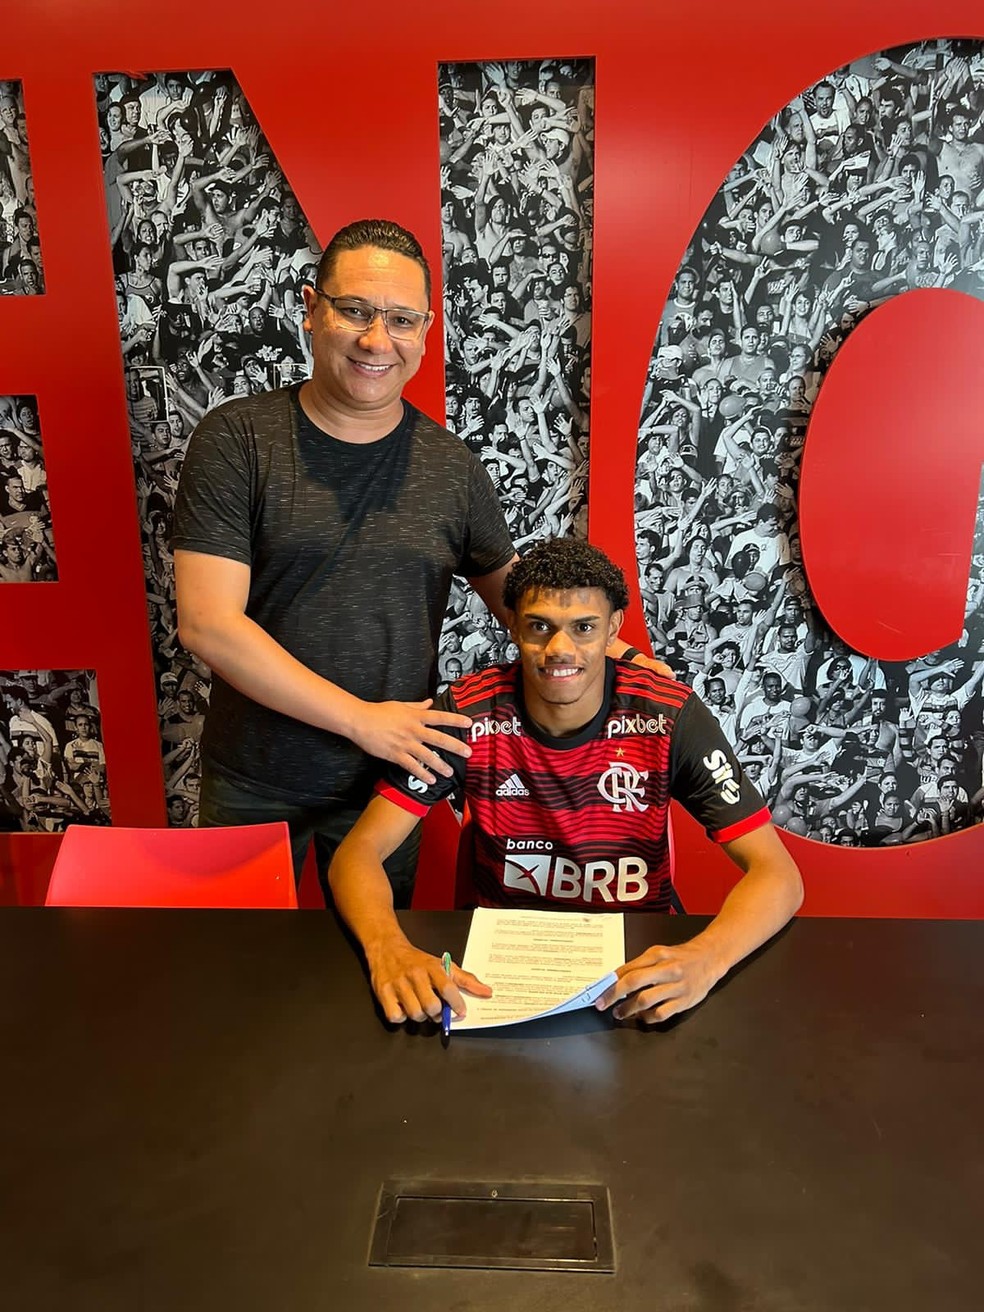 Maurício Isla revela conversa com Vidal sobre o Flamengo FlaResenha